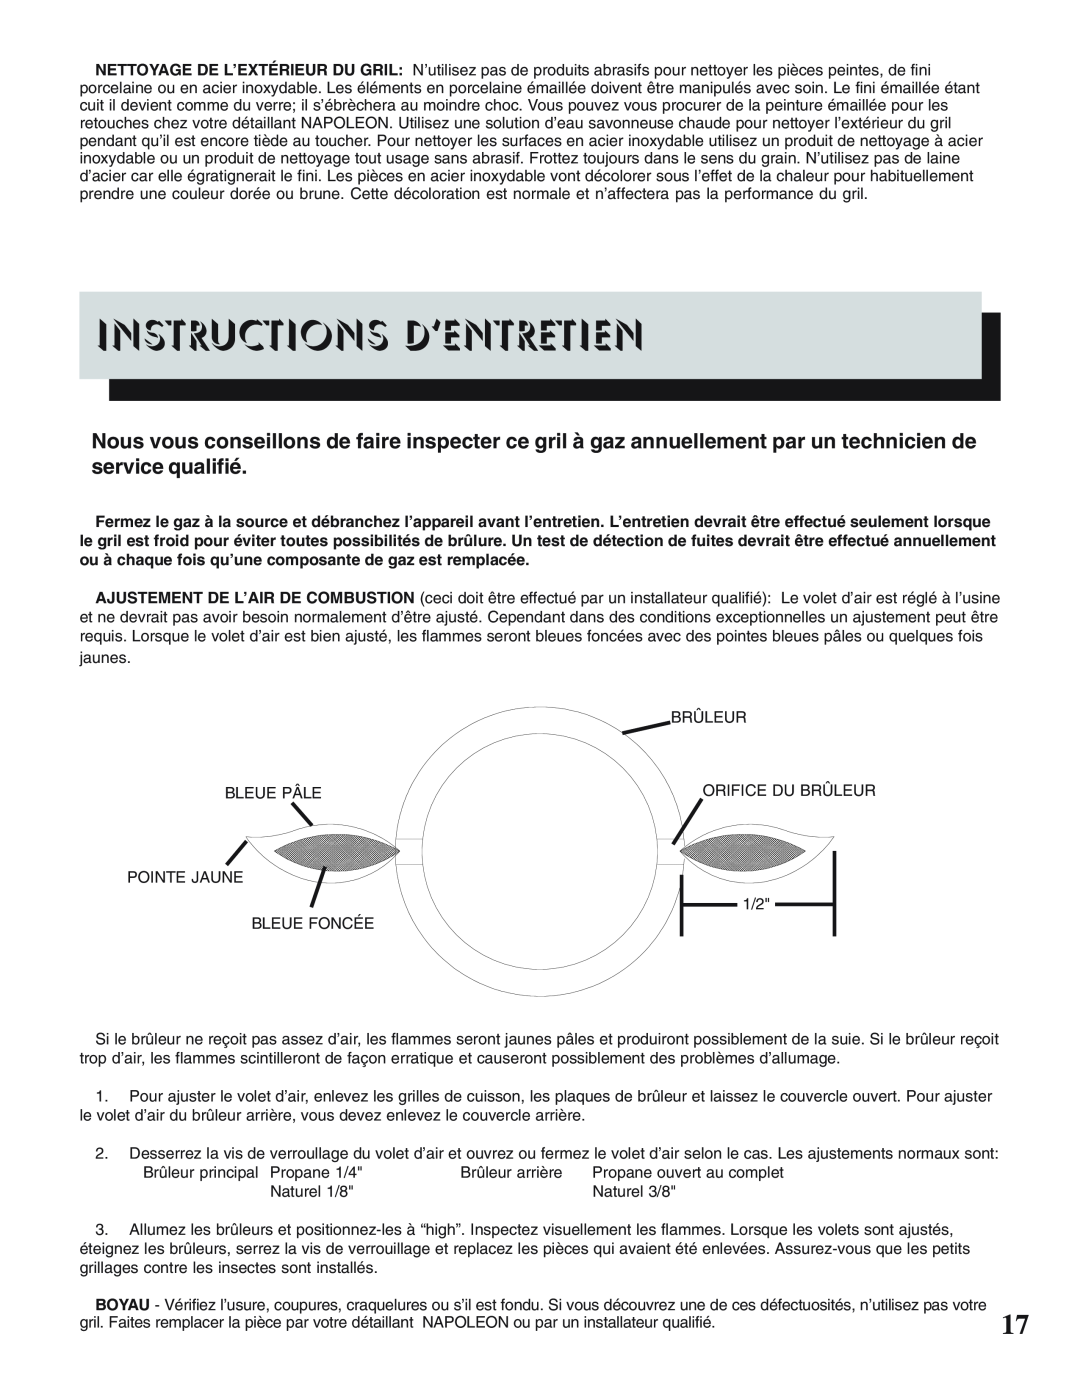 Napoleon Grills 450, PRESTIGE II 308 manual Instructions D’Entretien 